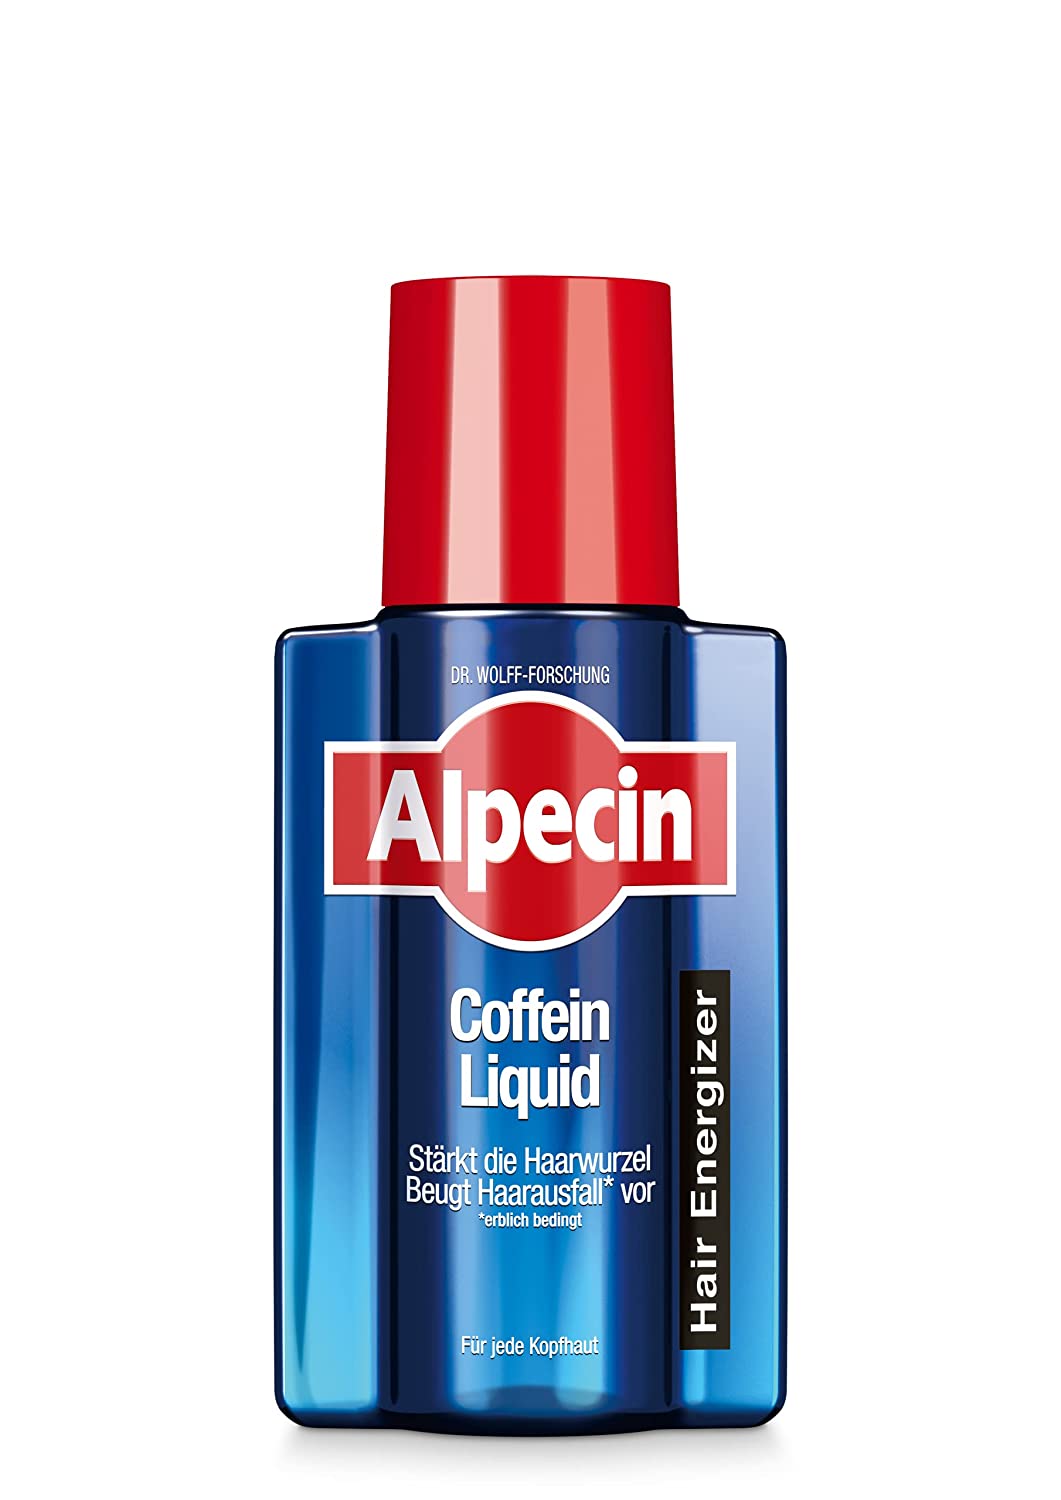 Alpecin Coffein-Liquid – 1 x 200 ml - Hair Energizer zur Vorbeugung von erblich bedingtem Haarausfall bei Männern – zur Stärkung der Haarwurzel, ‎multi-coloured